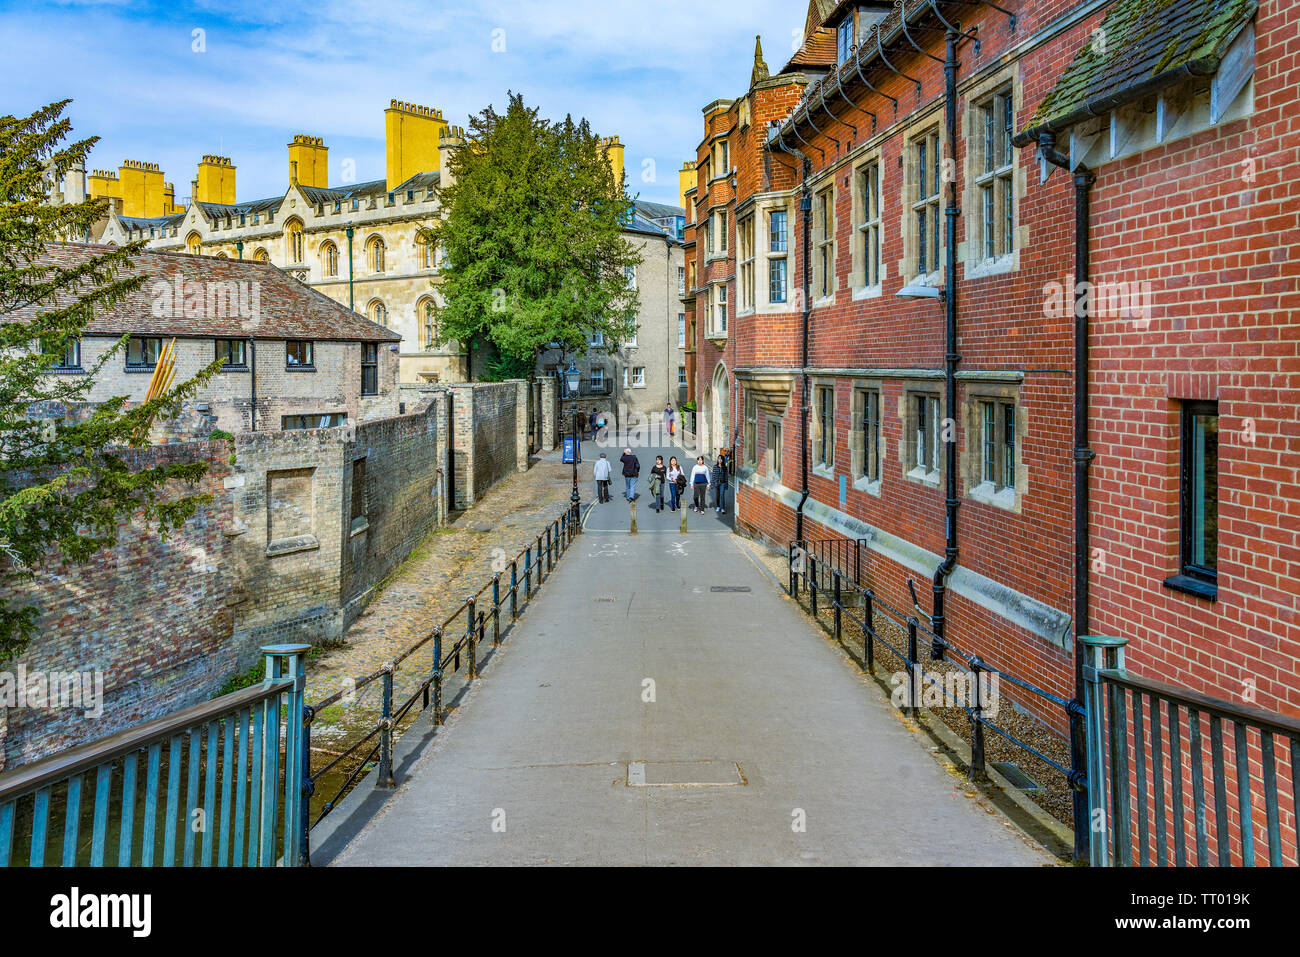 CAMBRIDGE, Royaume-Uni - 18 avril : c'est l'Avenue une rue avec l'extérieur de l'architecture traditionnelle britannique Trinity College le 18 avril, 2019 dans C Banque D'Images